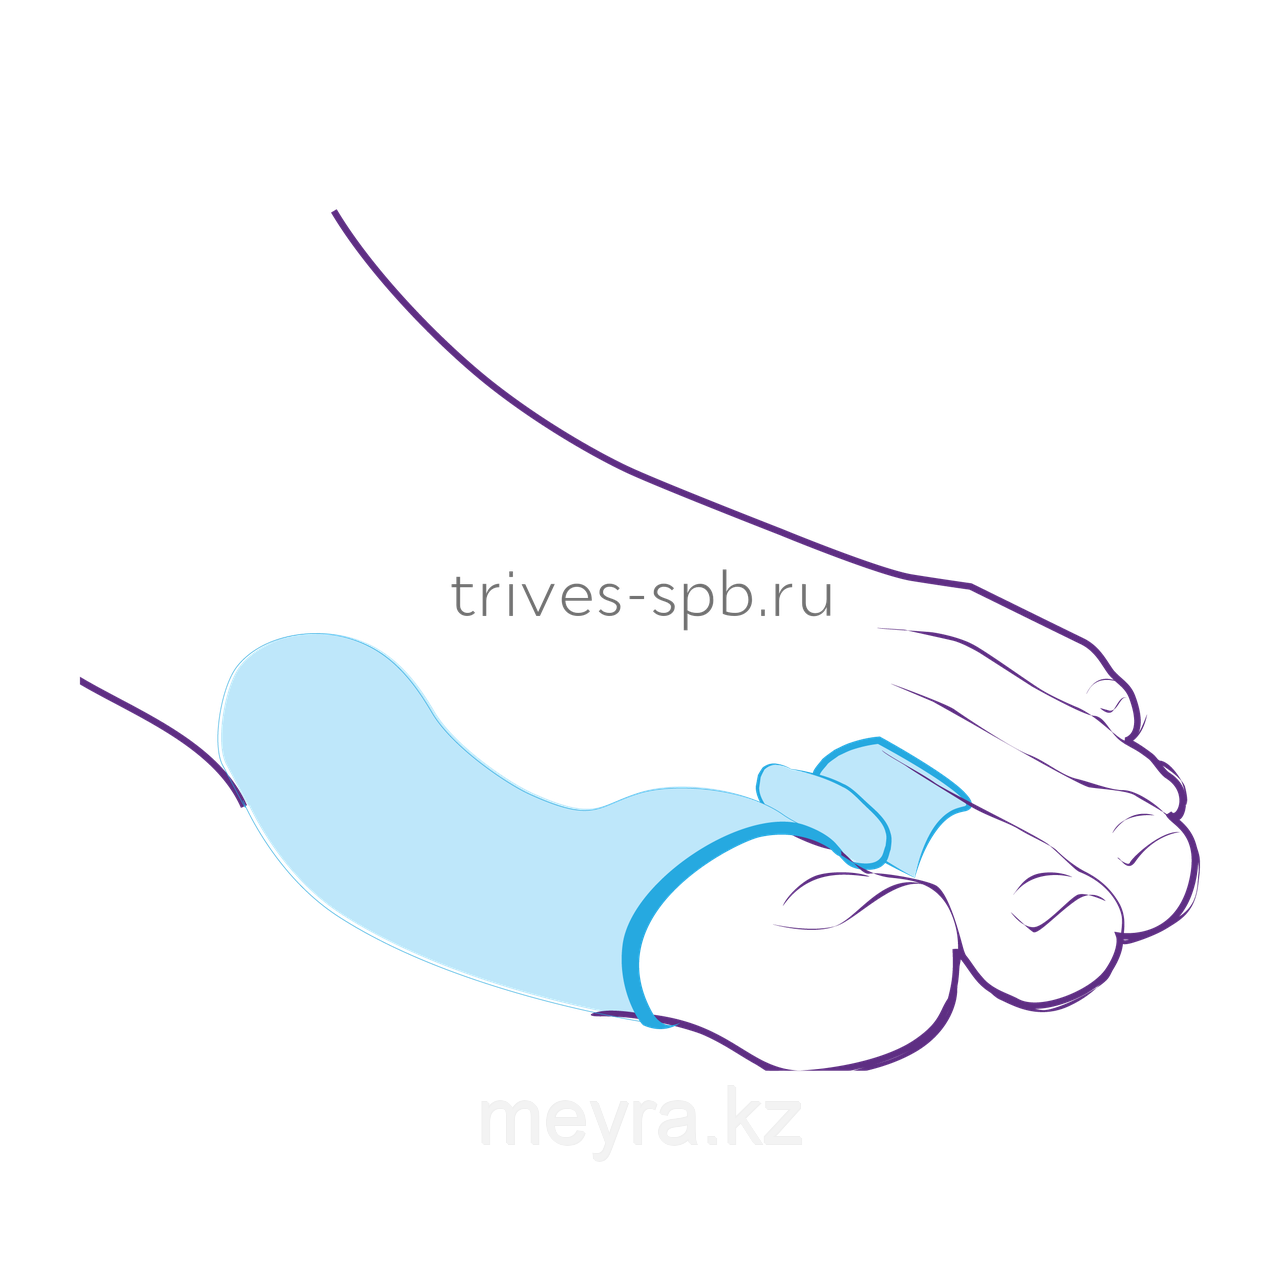 Перегородка межпальцевая, совмещенная с протектором сустава, фото 1